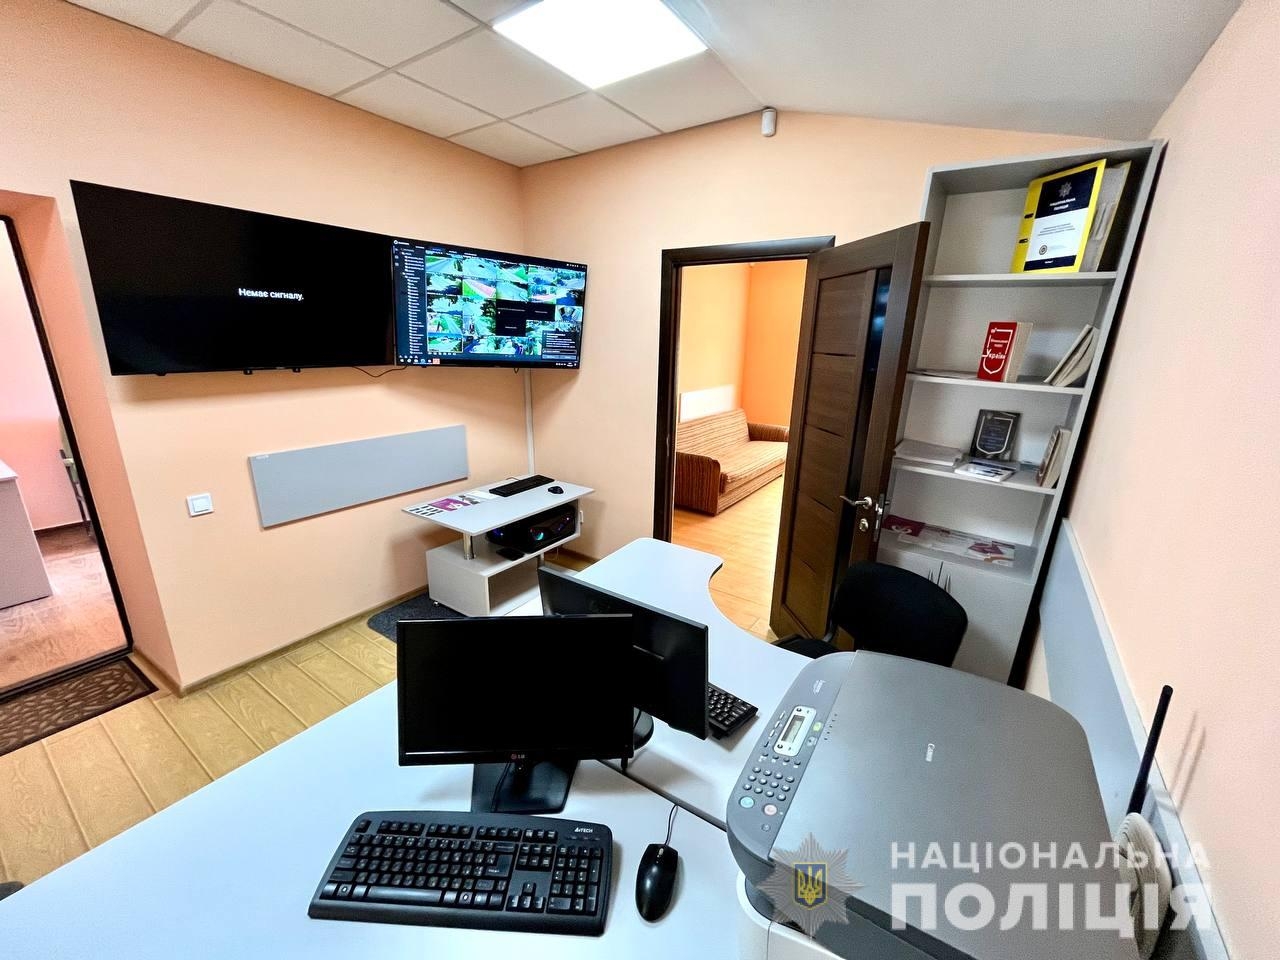 У Хижинцях Вінницького району відкрили поліцейську станцію для 13 сіл